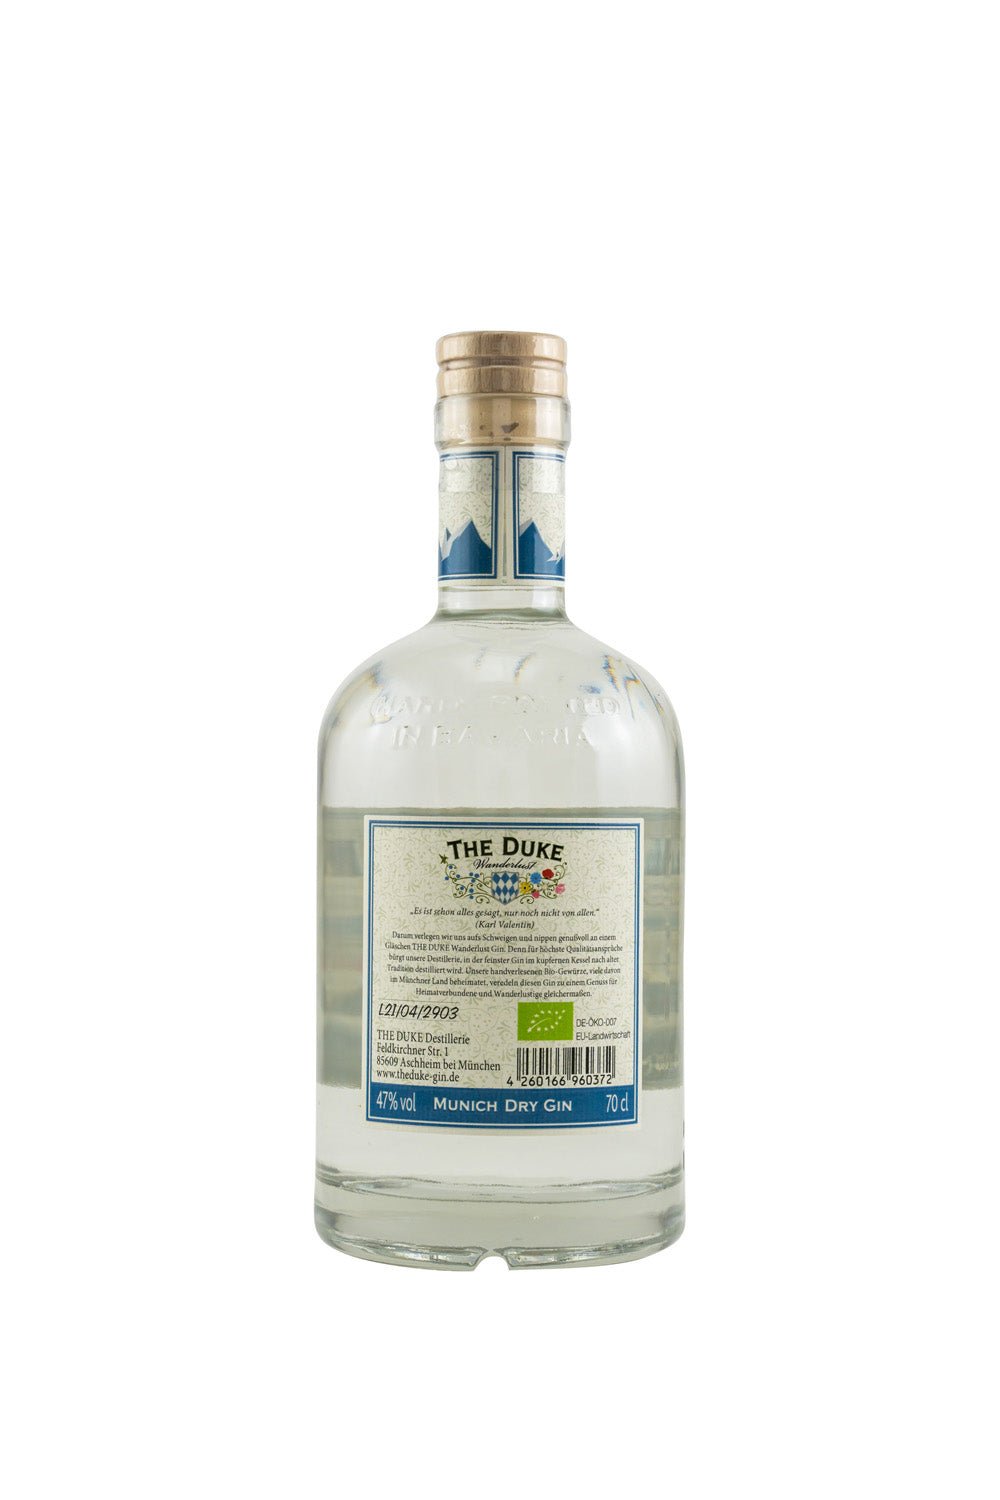 The Duke Wanderlust Munich Dry Gin Bio 47% vol. 700ml - Maltimore